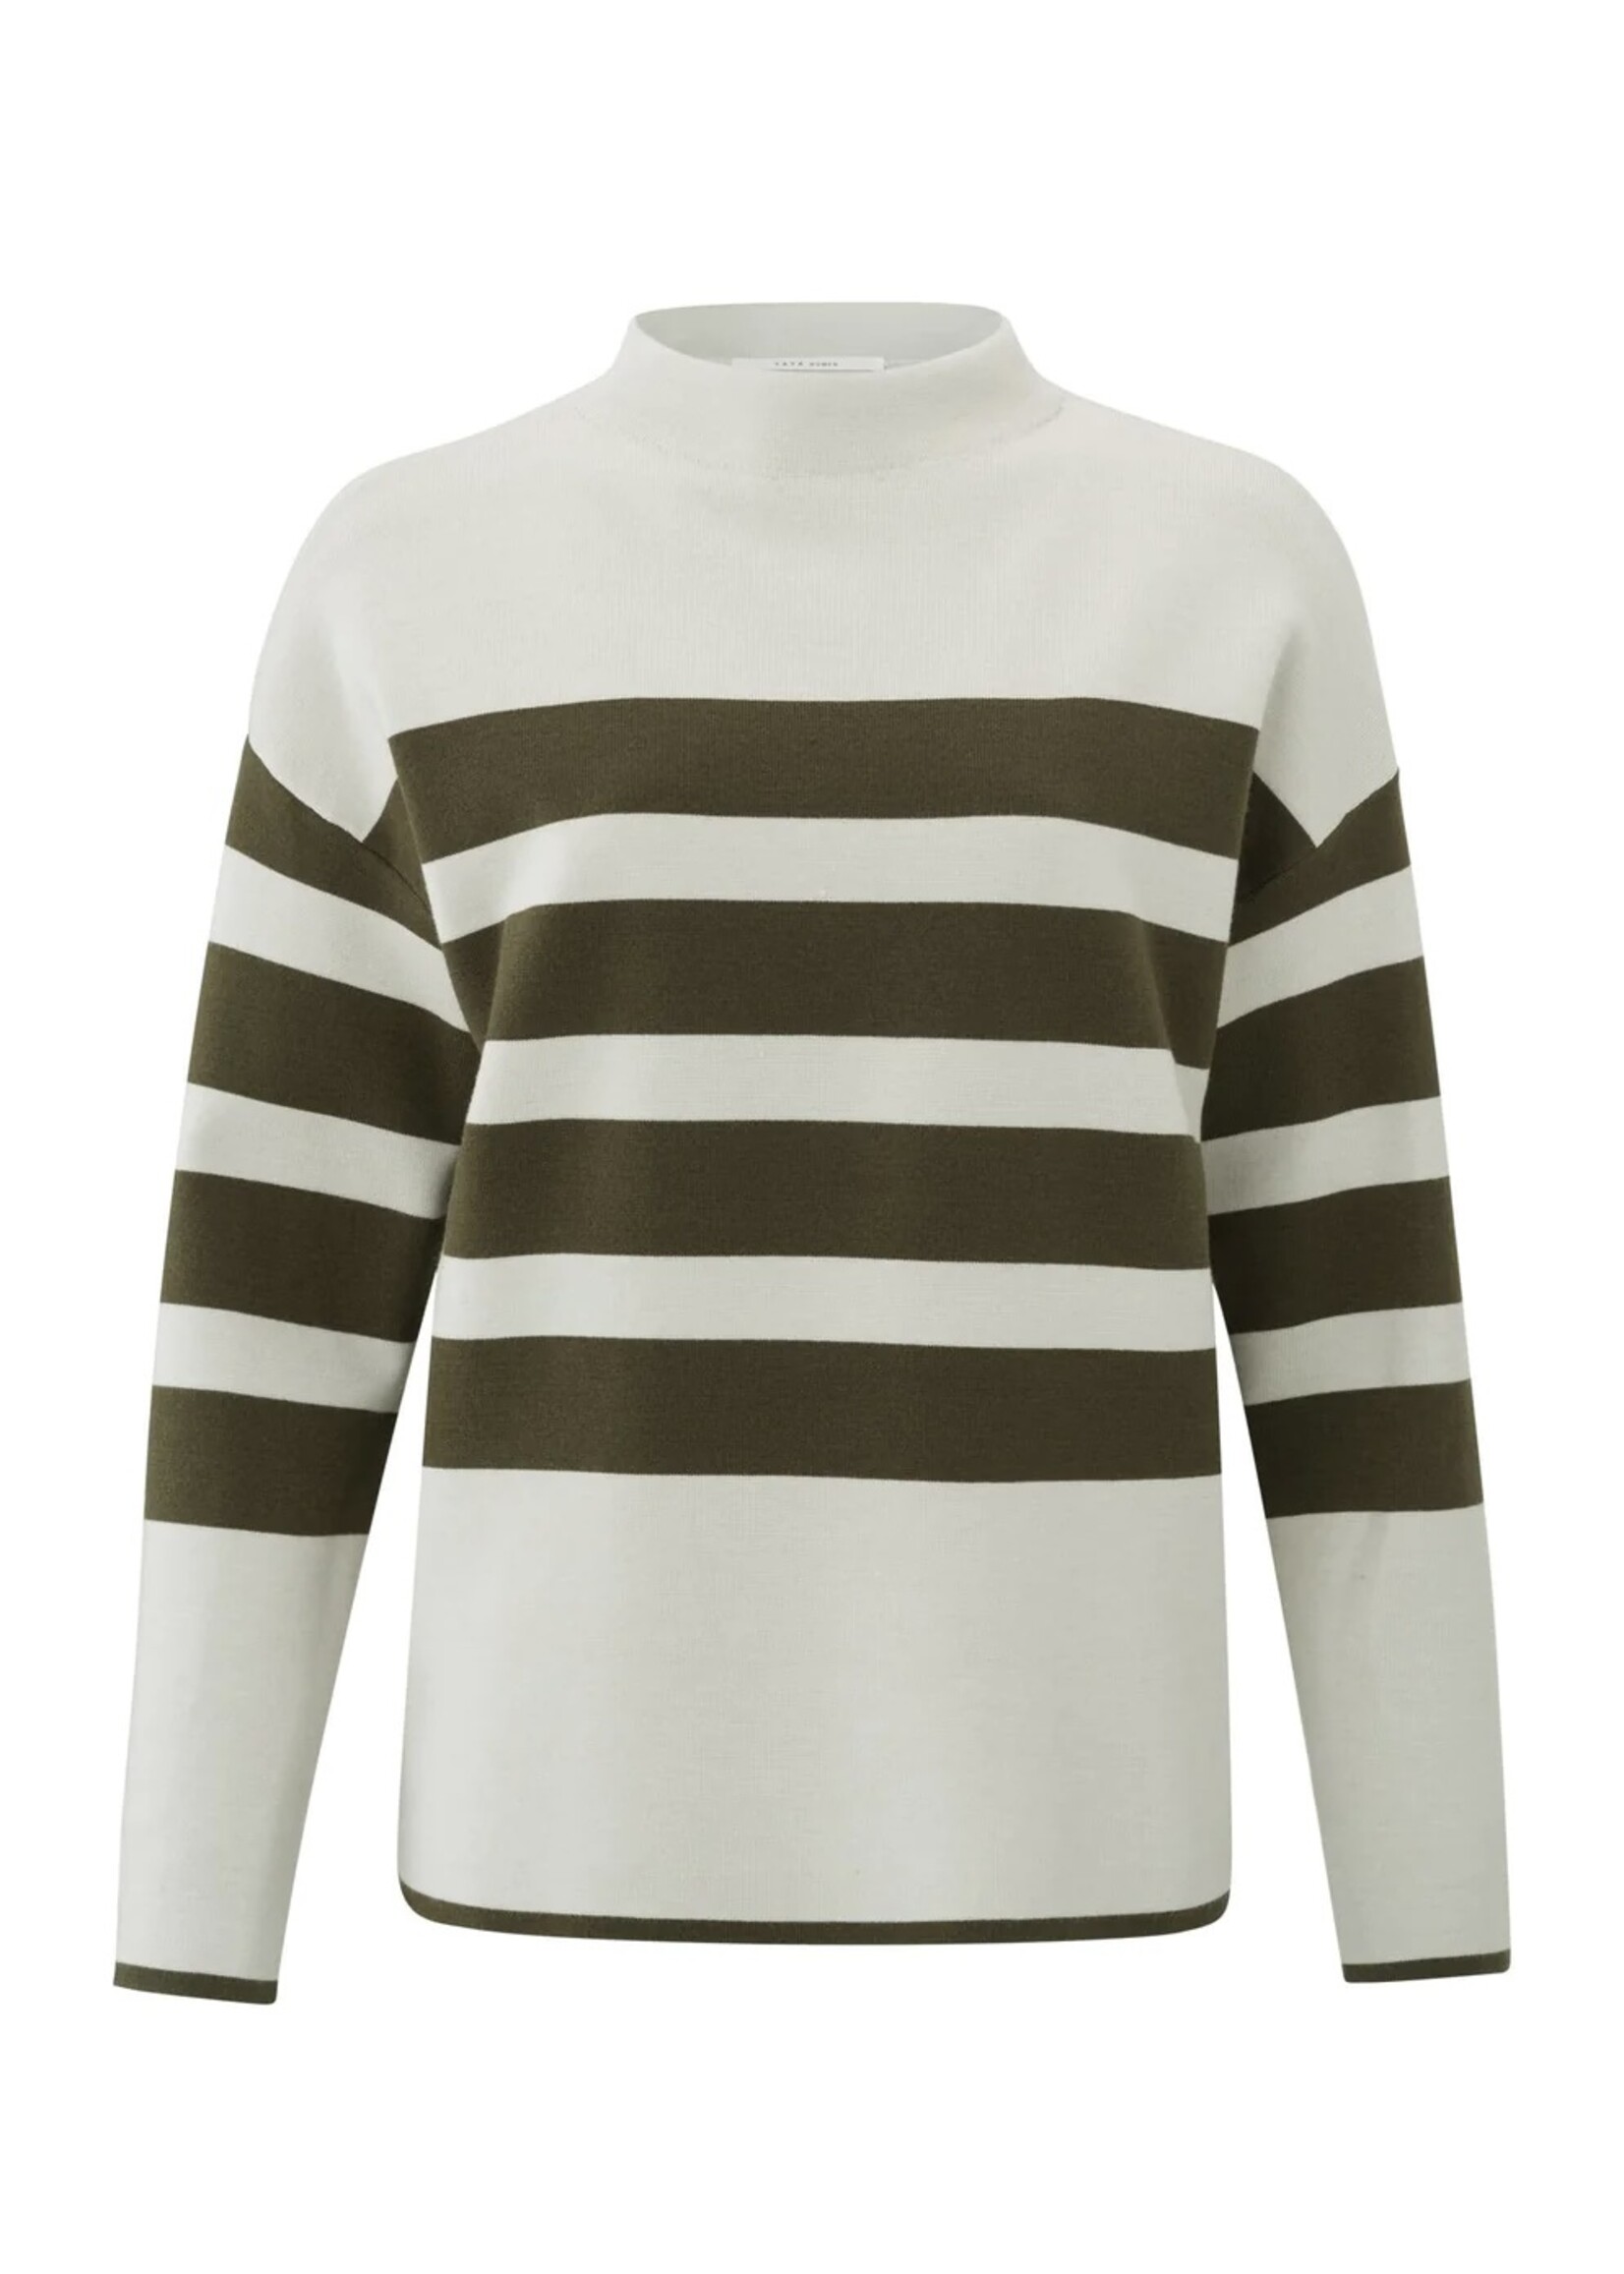 YAYA Yaya - Stripe Sweater